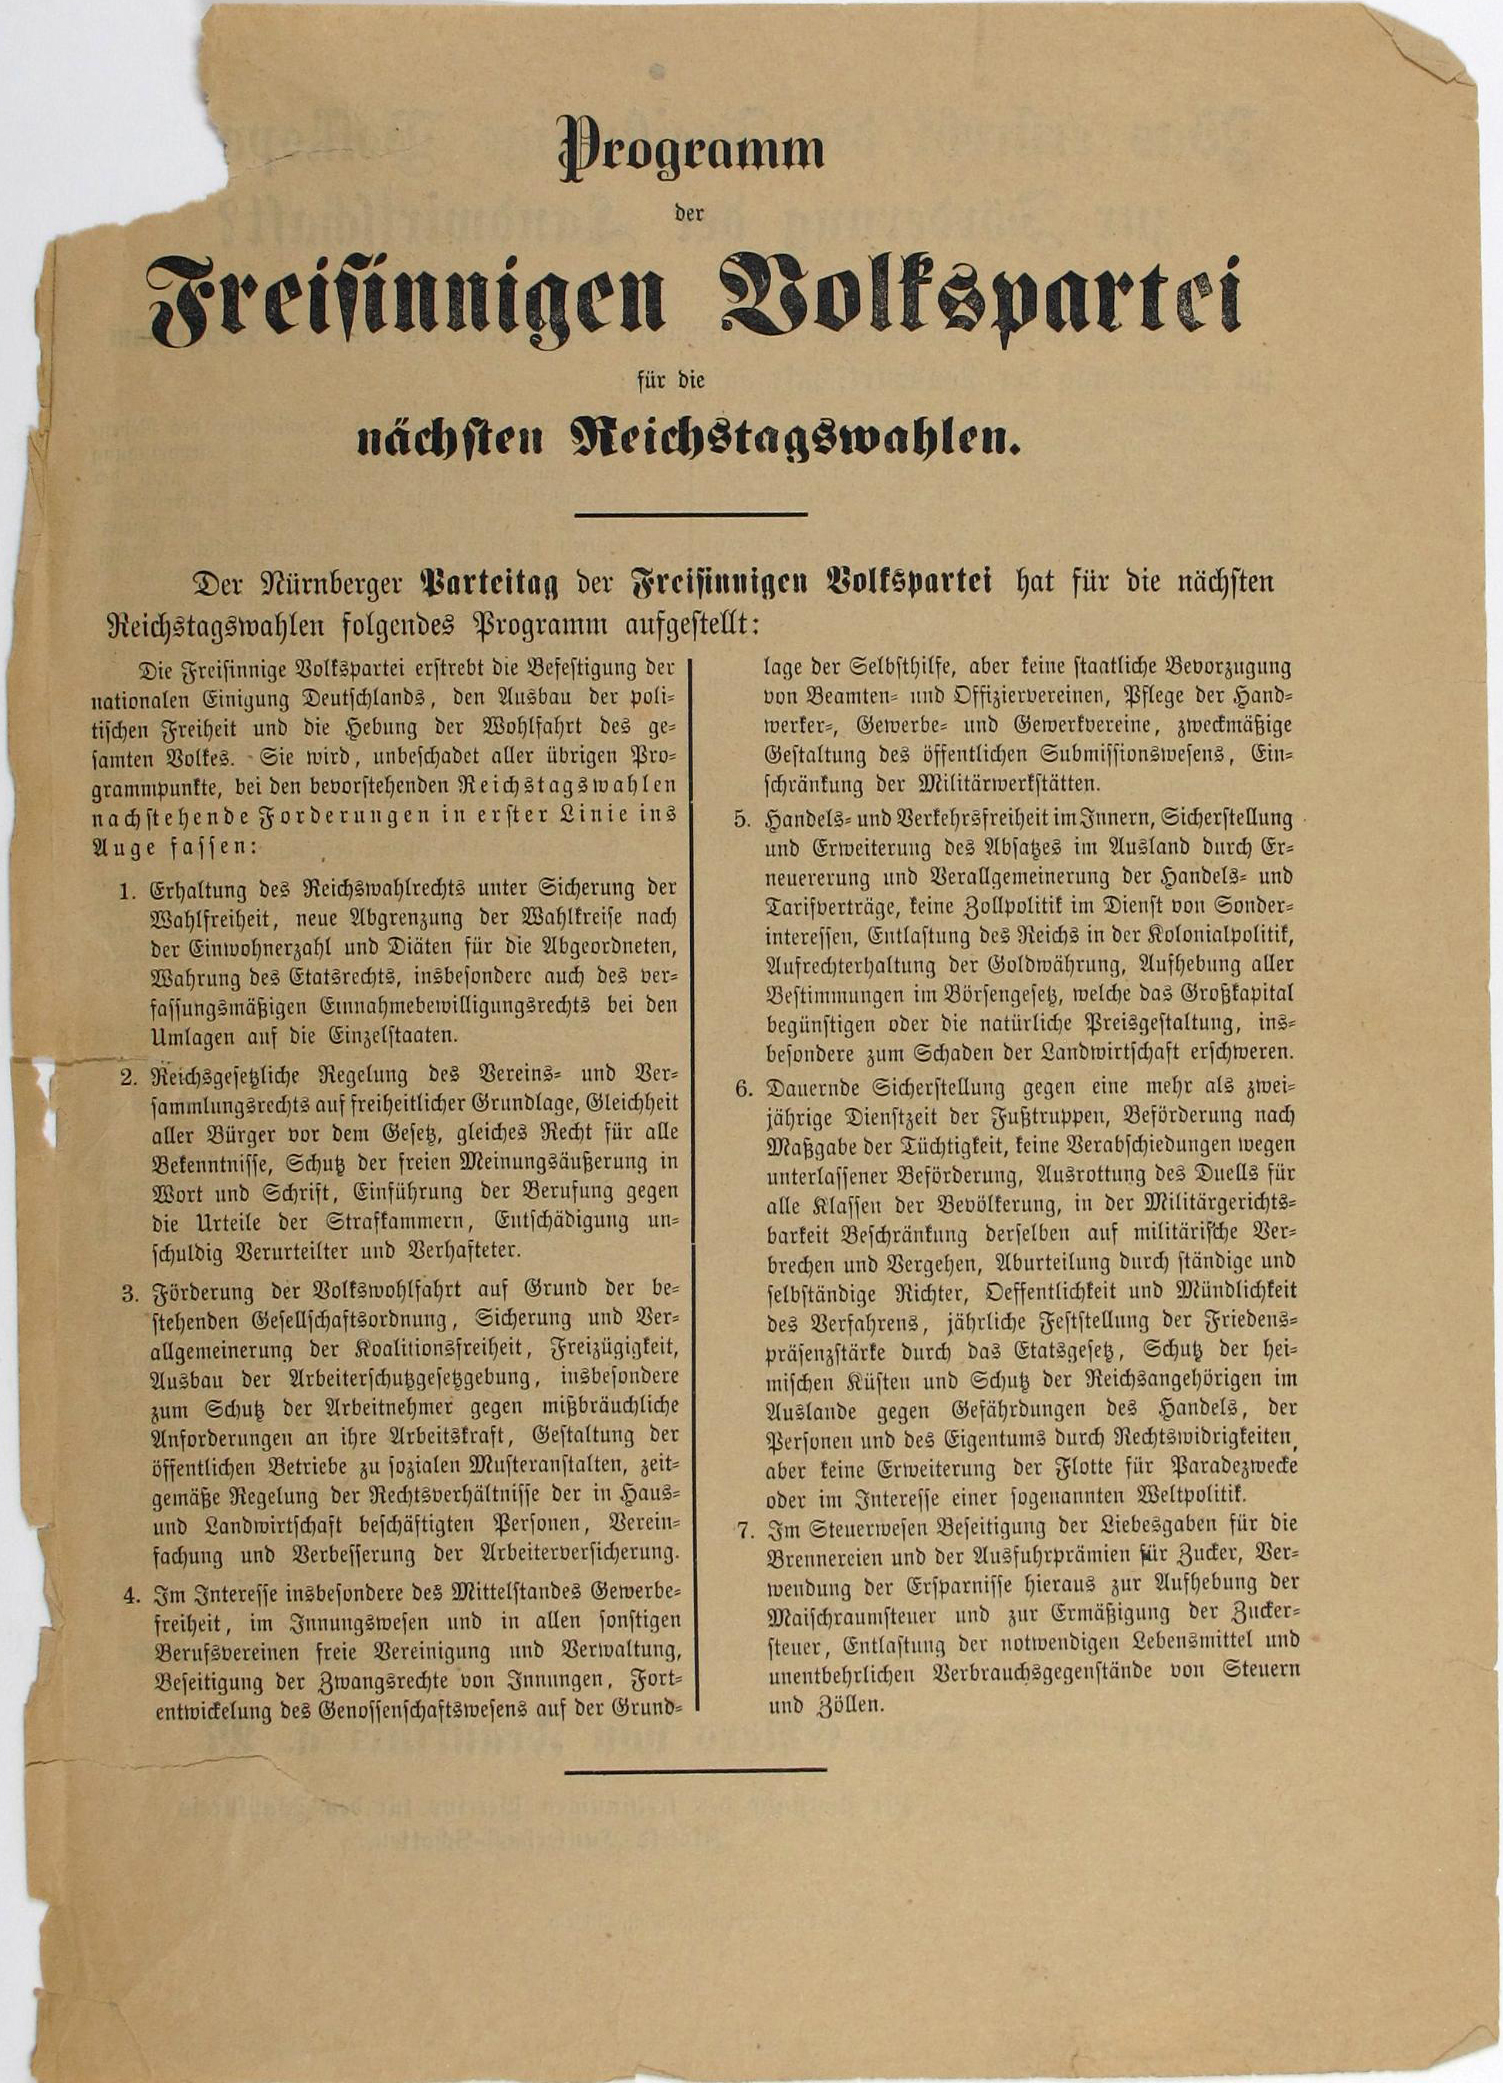 Flugblatt mit dem Wahlprogramm der 'Freisinnigen Volkspartei', 1898